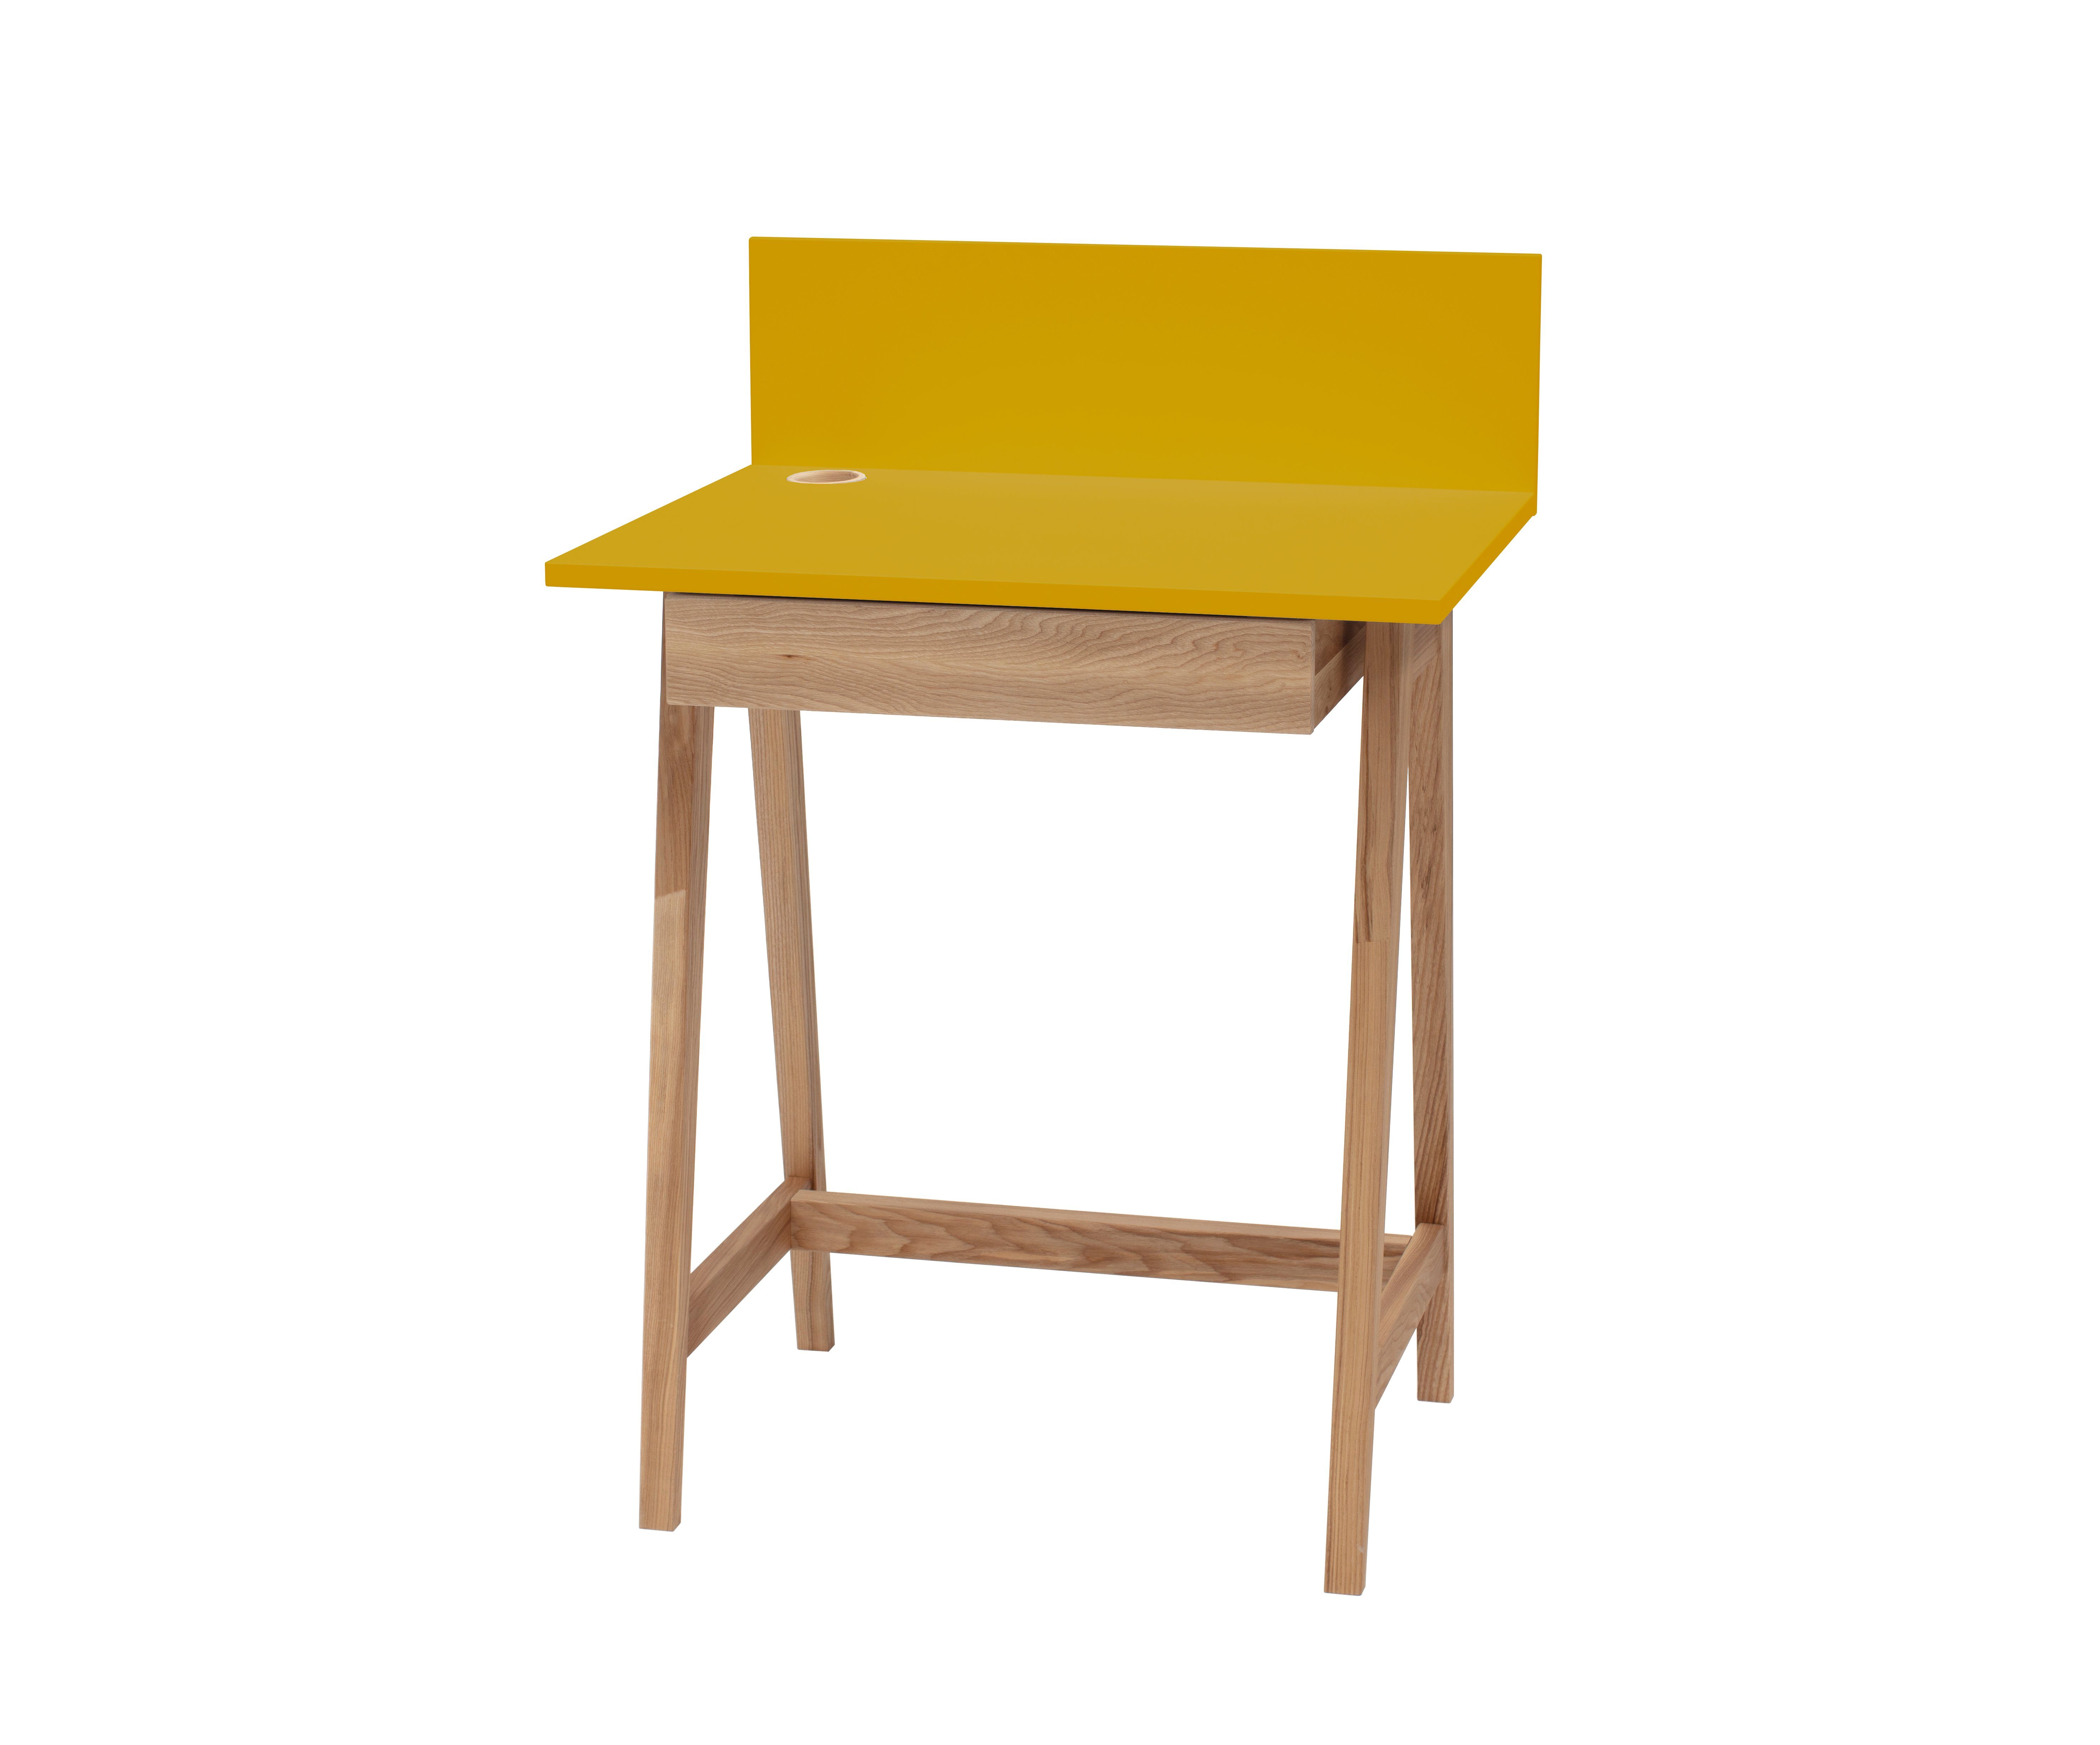 Schreibtisch Luke Schreibtisch Luke Design - Eschenholz - mit Kinderzimmer Bunter Siblo Schublade) Gelb Schublade minimalistisches mit - - Kinderschreibtisch - (Kinderschreibtisch MDF-Platte